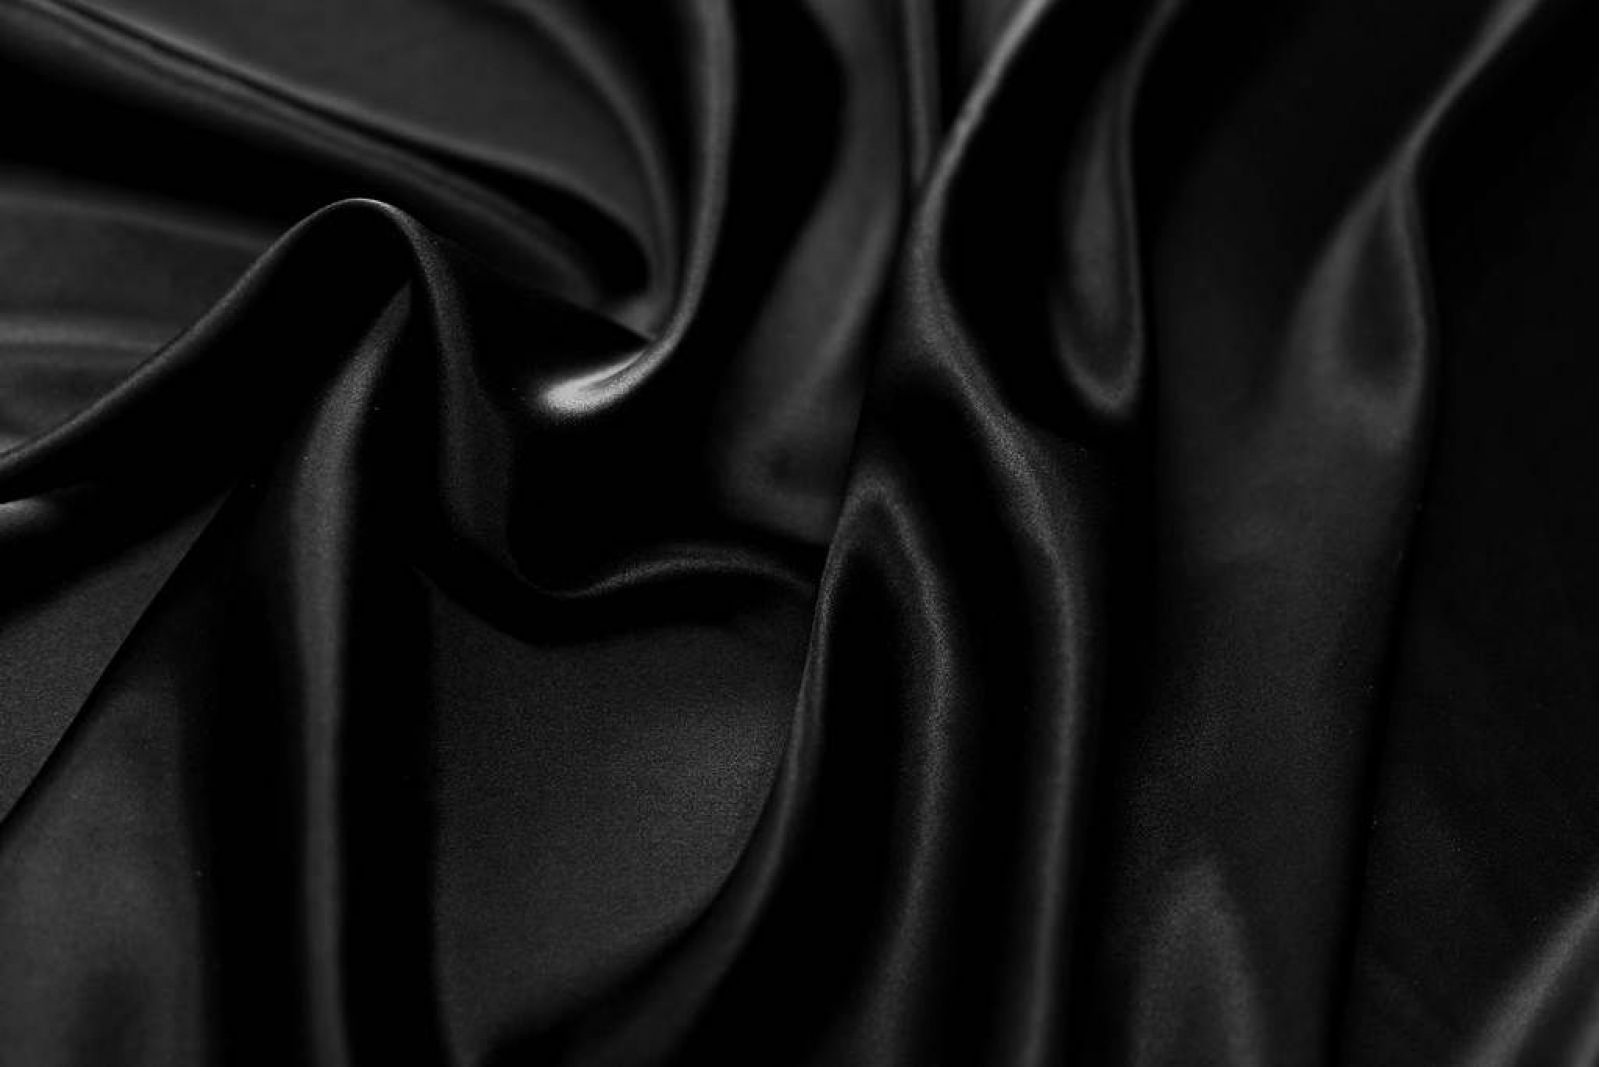 Купить Атлас, эксклюзивные ткани для одежды ф5193 Черный атлас (100%шелк).  в салоне тканей на Ленинском проспекте